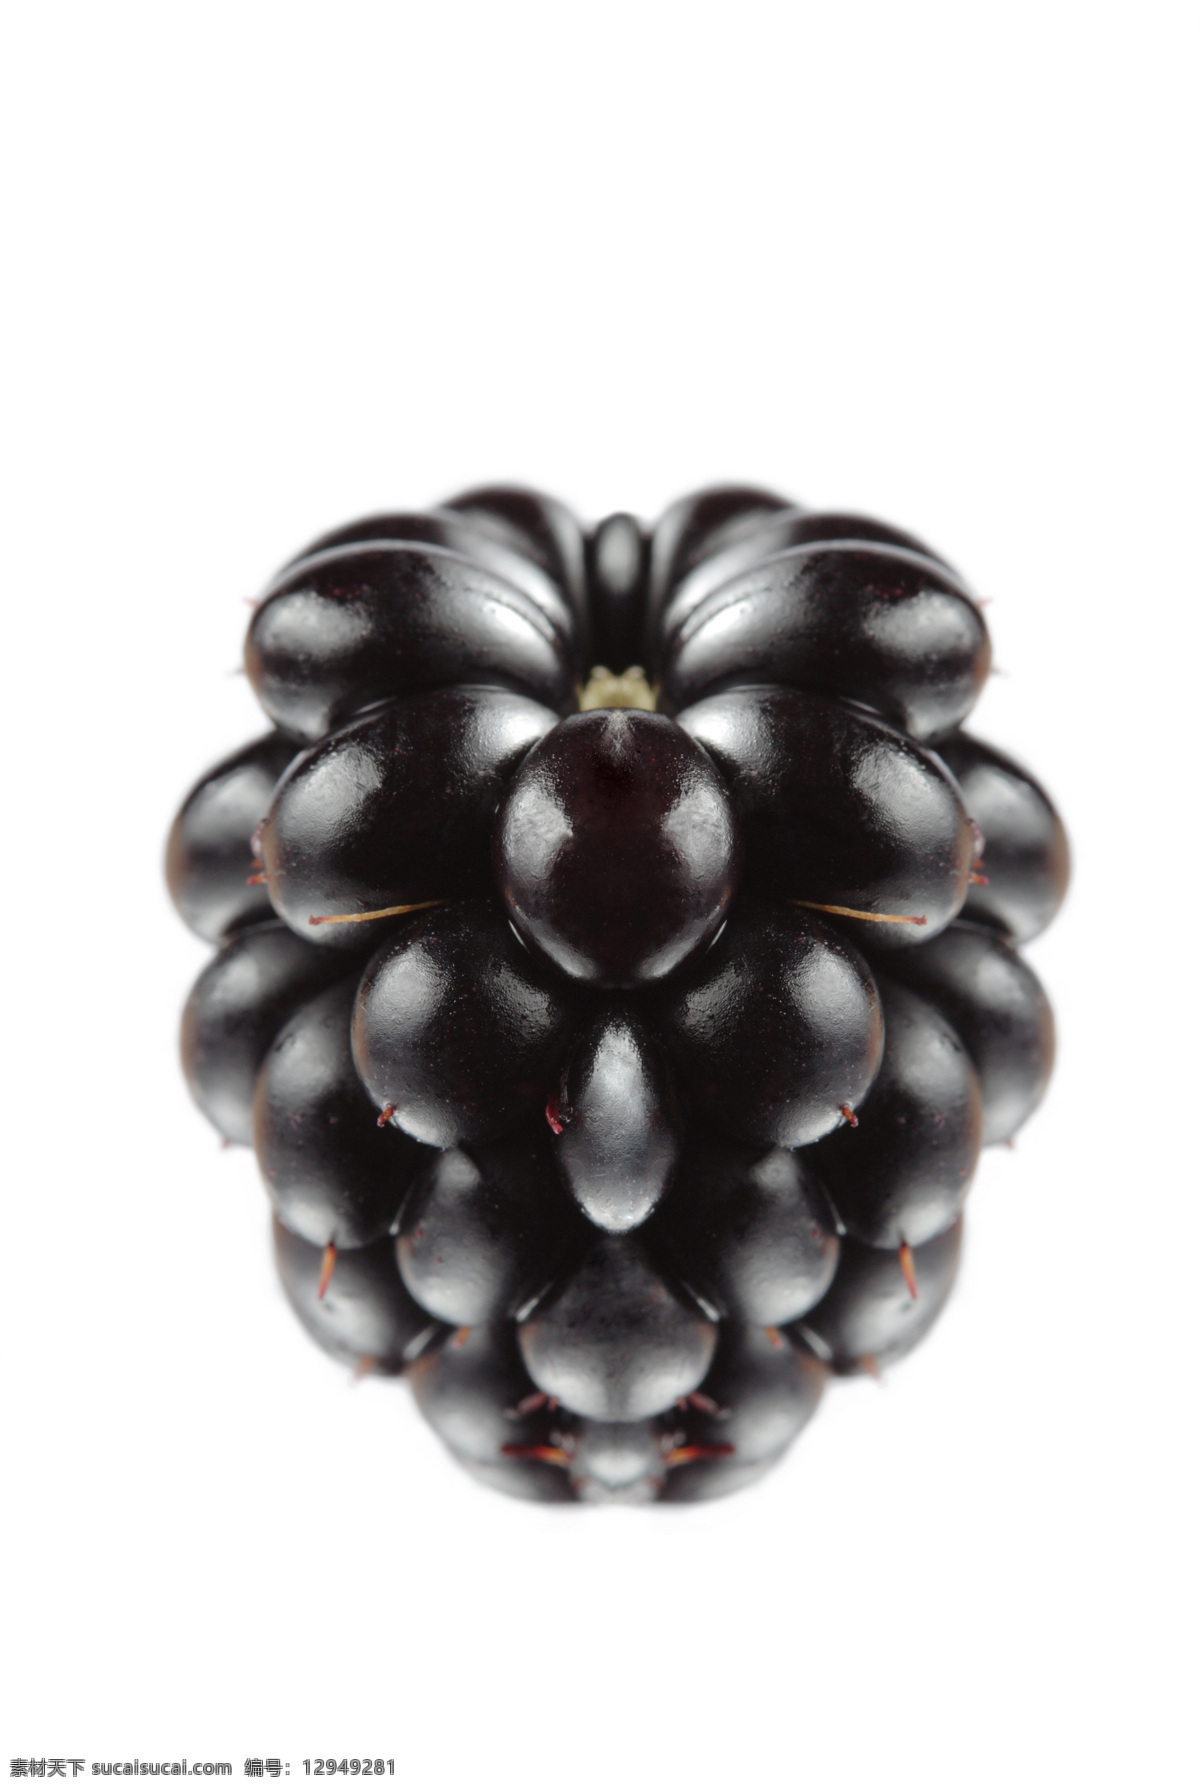 黑 莓 黑莓 水果 浆果 高清水果图 新鲜水果 健康水果 新鲜黑莓 诱人的黑莓 黑莓特写 水果高清图 生物世界 蔬菜图片 餐饮美食